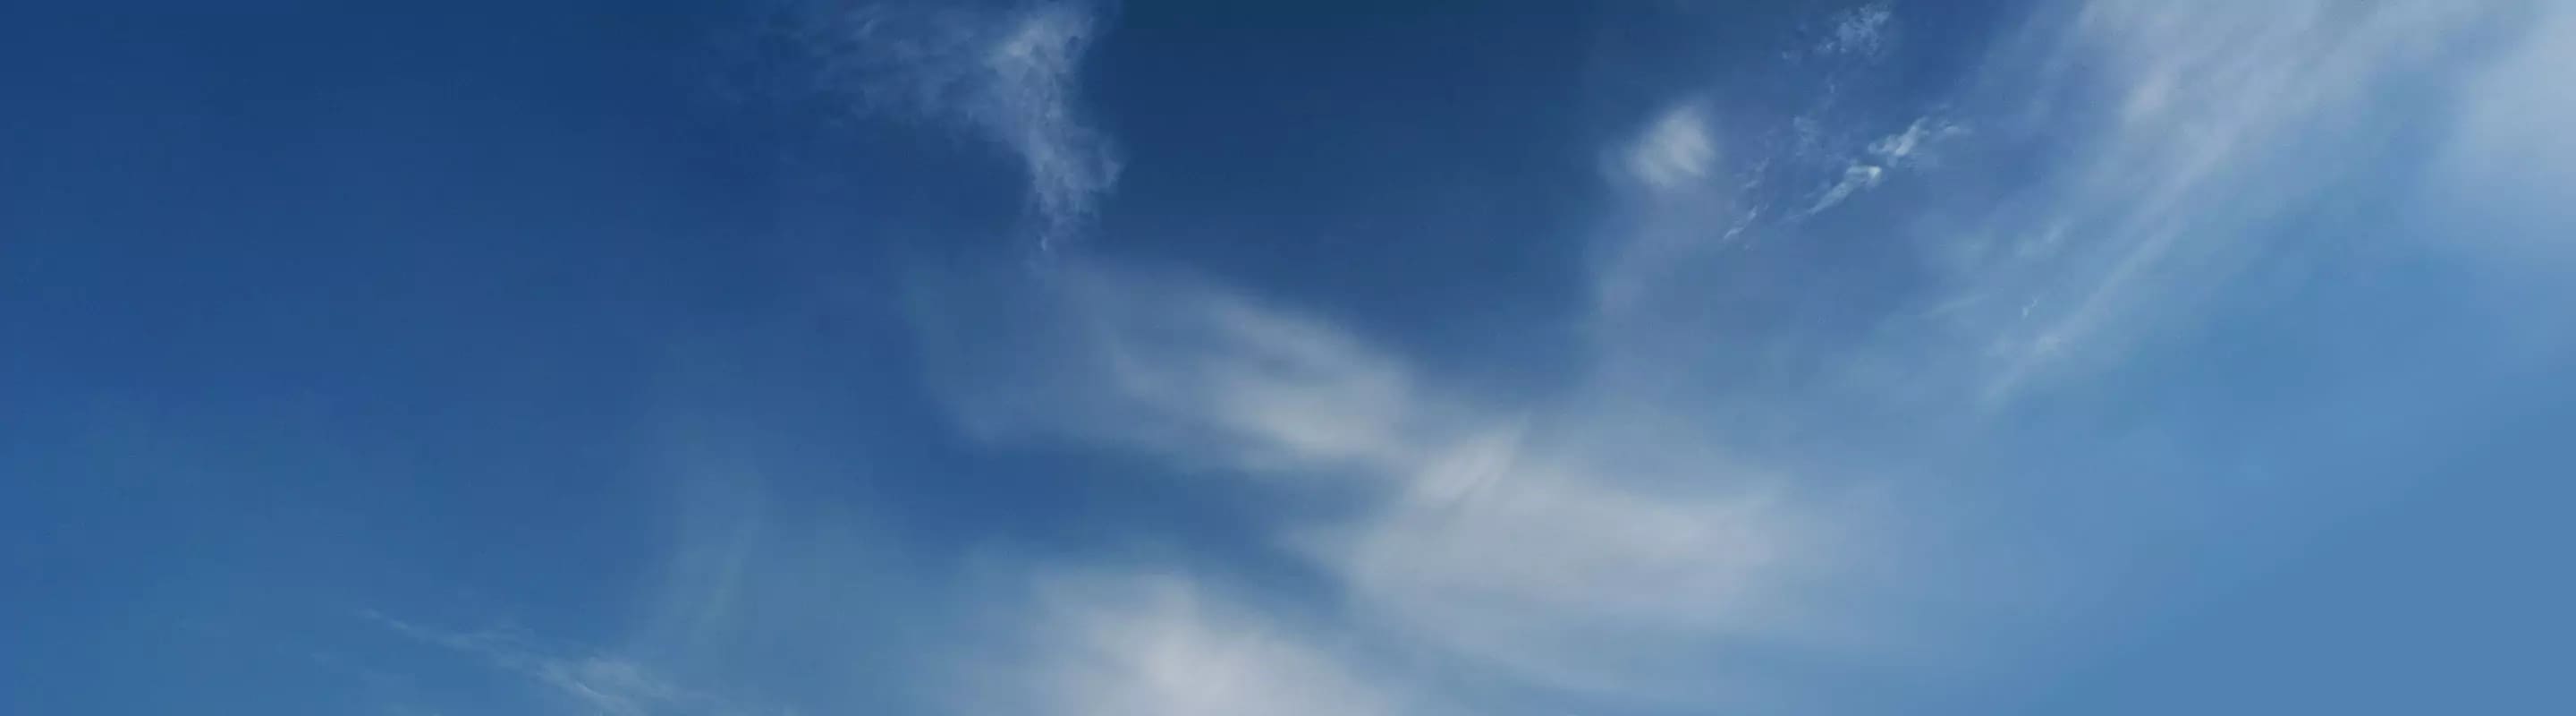 듬성 듬성 구름이 있는 푸른 하늘